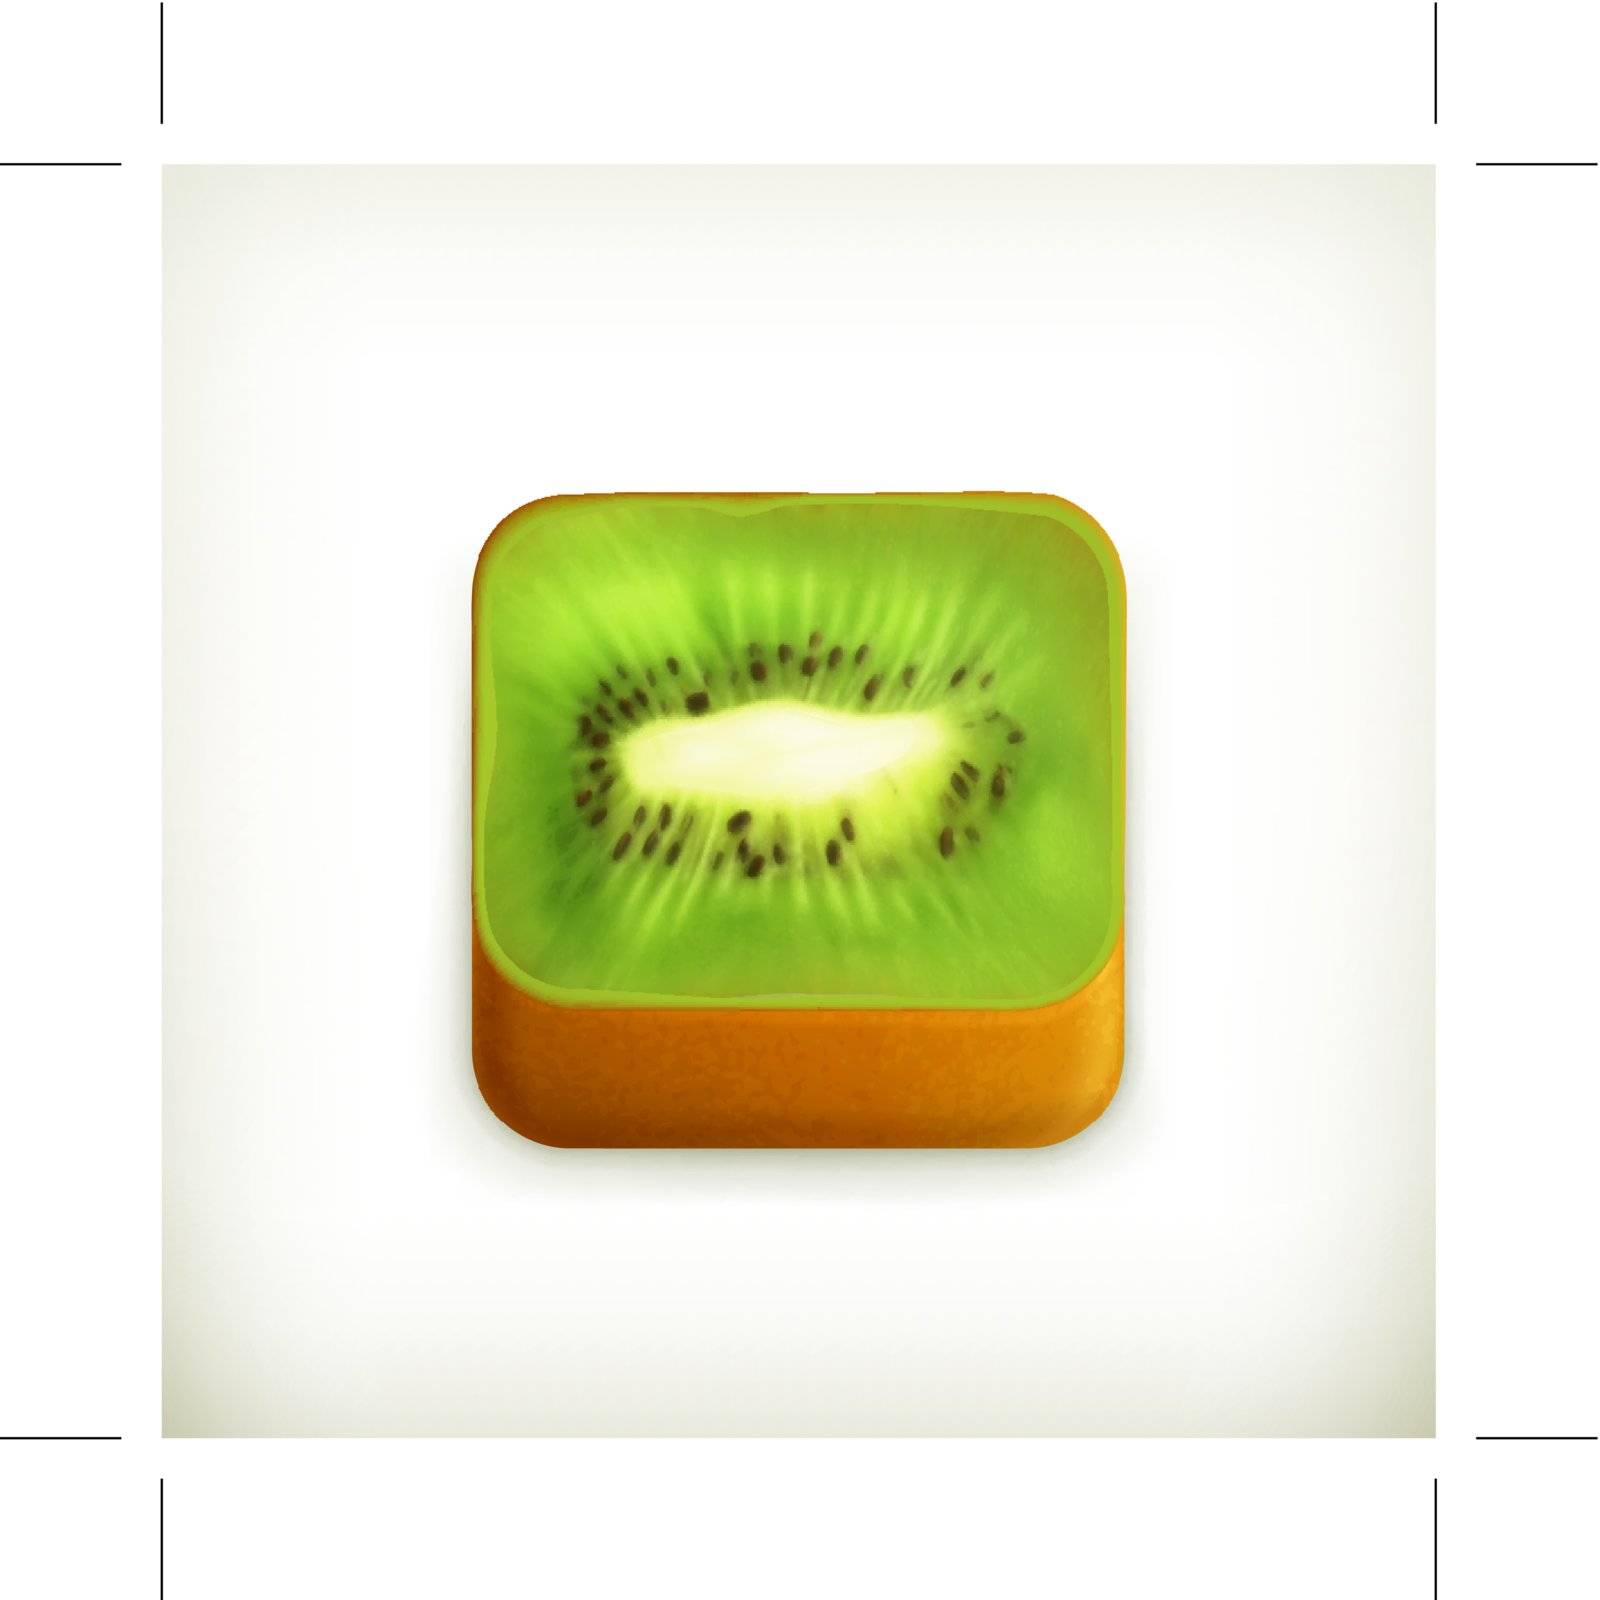 Kiwi app icon, vector by Allevinatis